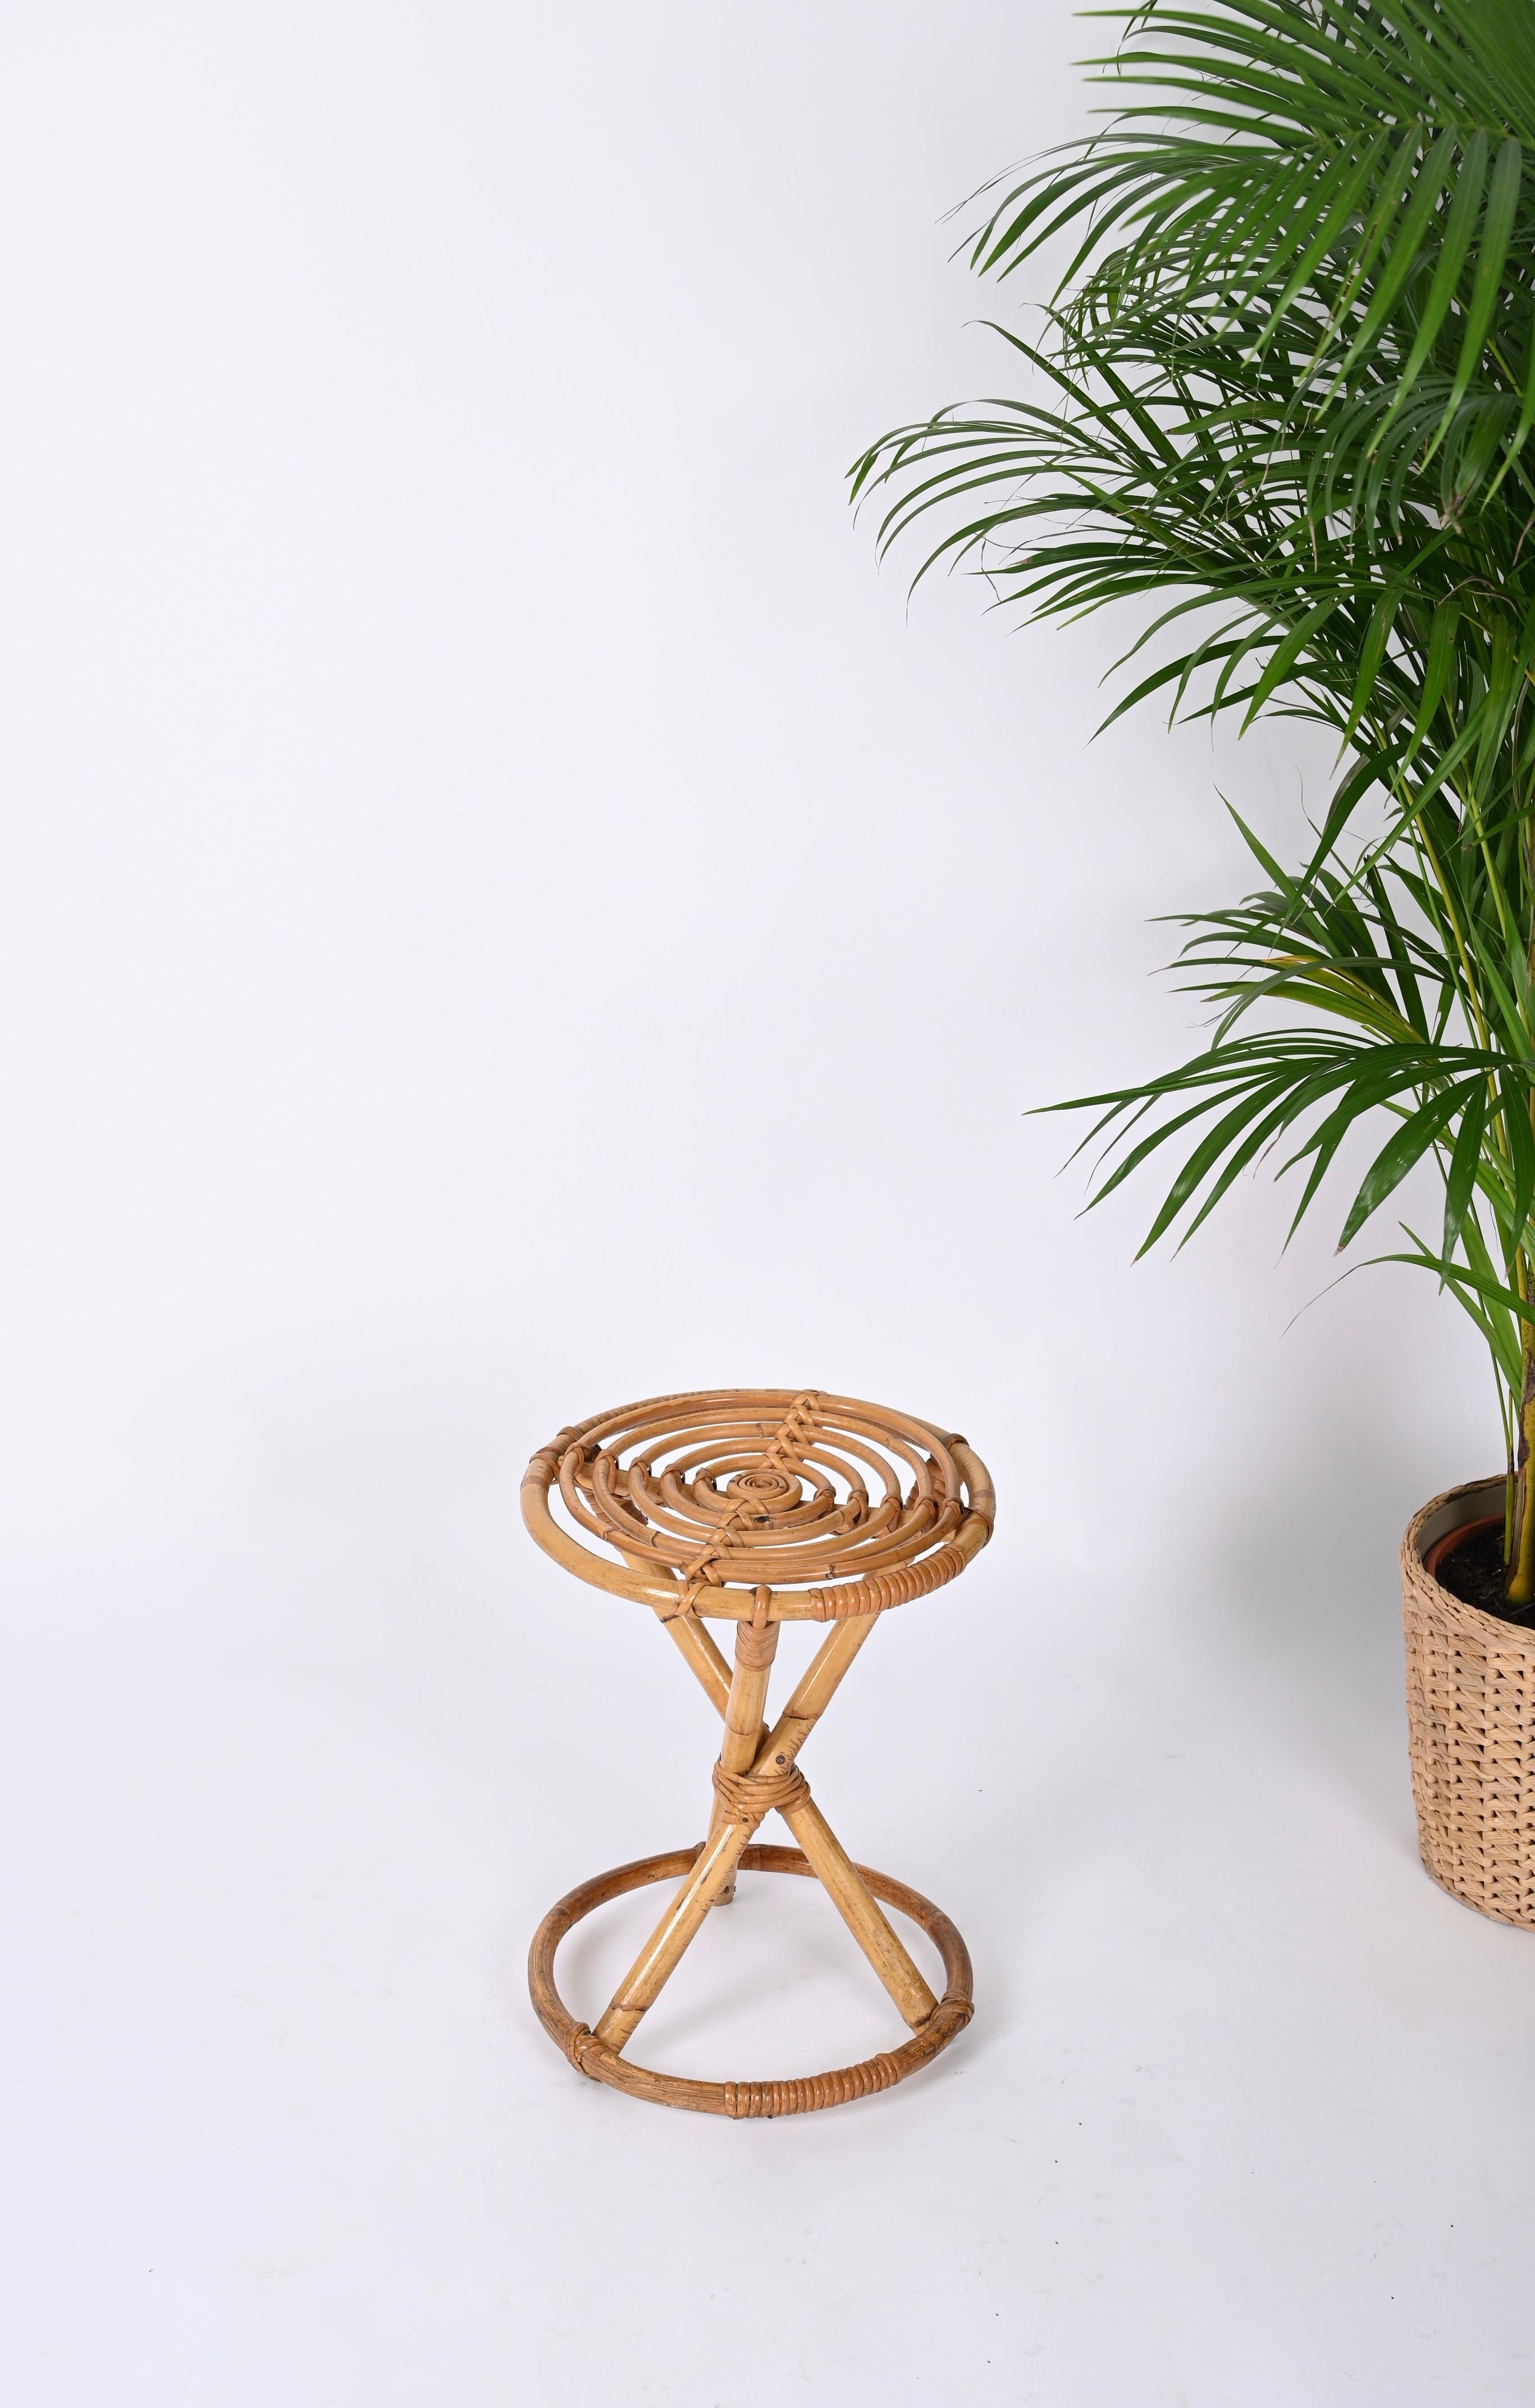 Schöner runder Hocker aus Rattan und Bambus aus der Jahrhundertmitte. Dieses erstaunliche Stück wurde in den 1960er Jahren in Italien hergestellt.

Der Hocker hat ein rundes Gestell aus gebogenem Bambus, drei gerade Beine und eine wunderschöne runde